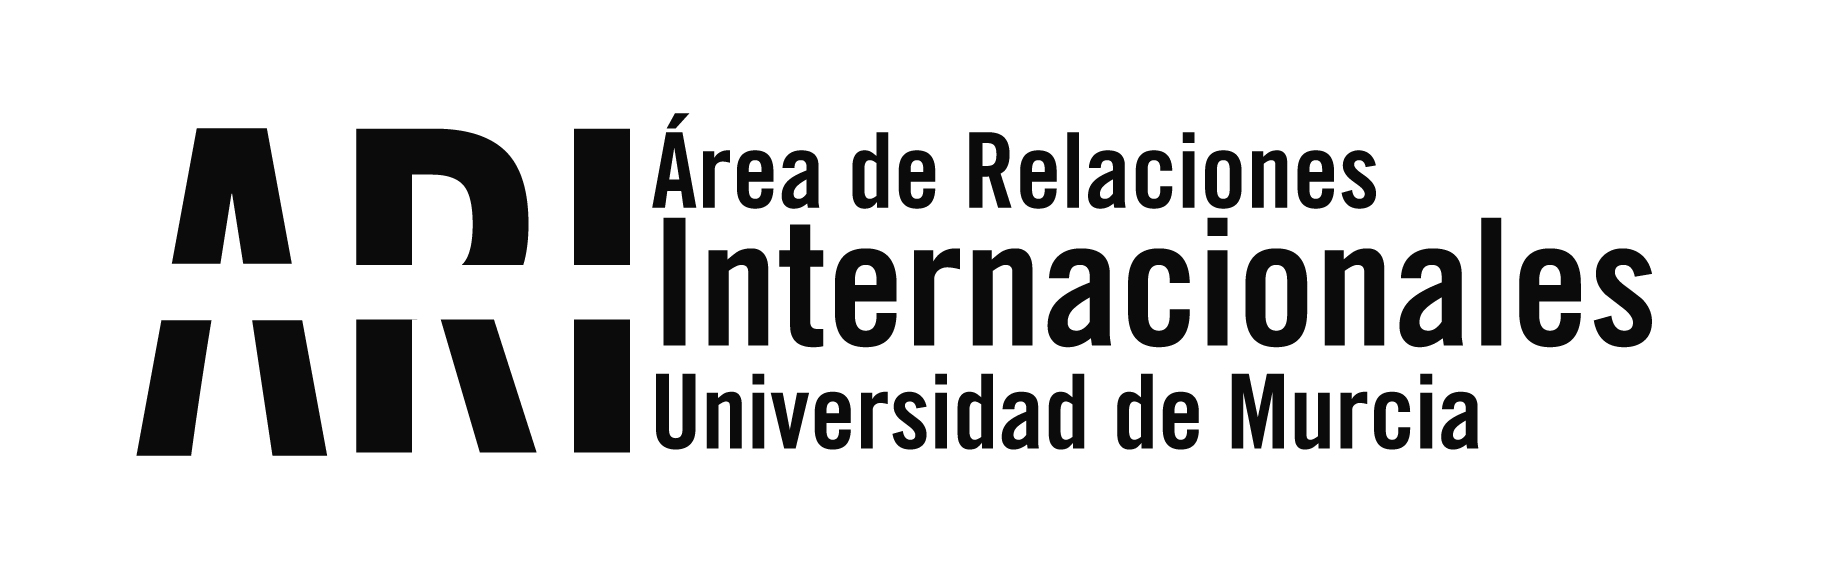 Bienvenida Universidad de Murcia Internacional 2016-17 - Área de Relaciones Internacionales